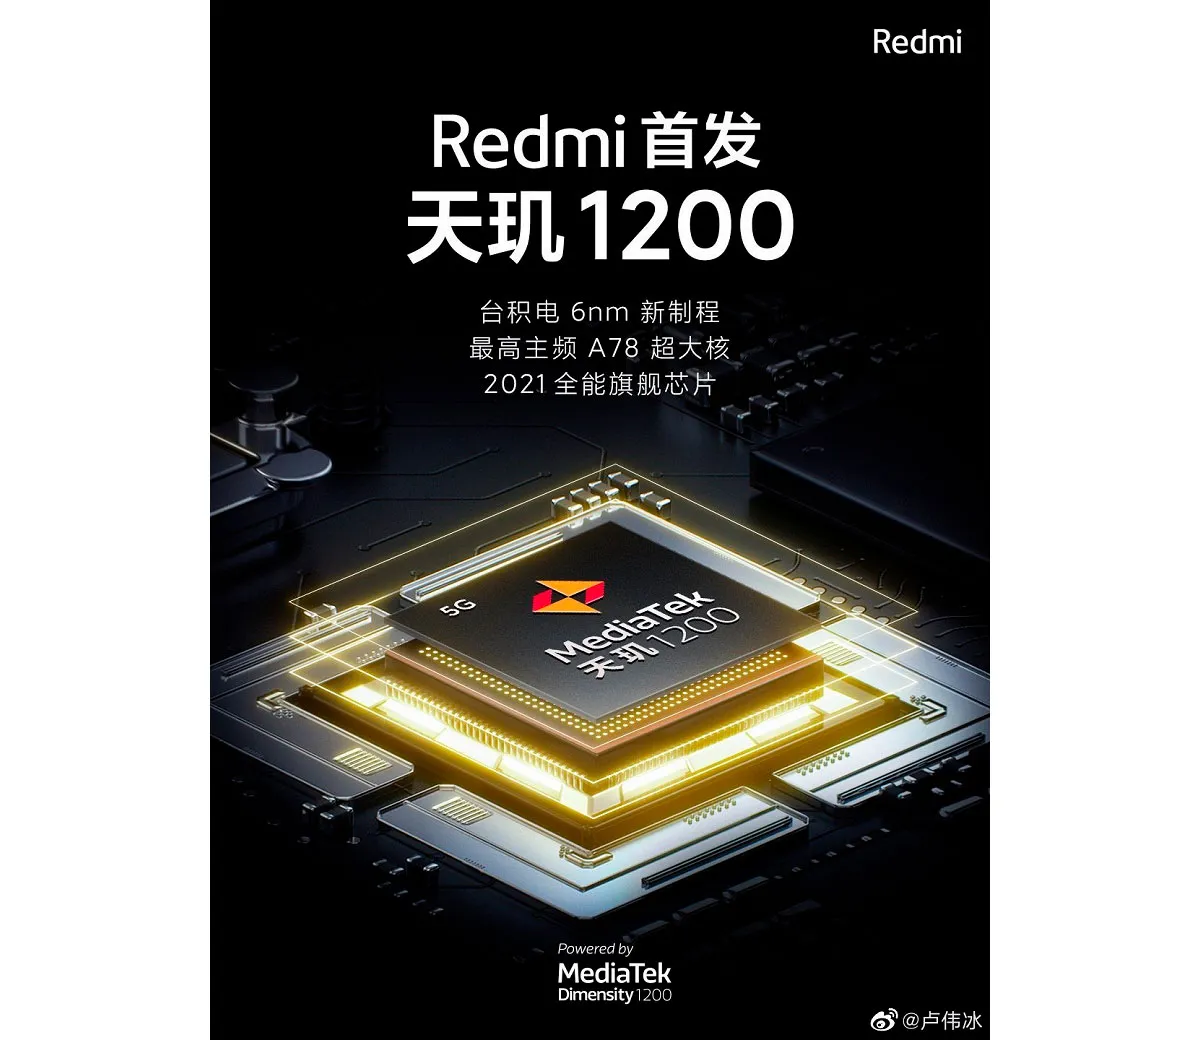 До конца месяца будет представлен первый игровой смартфон Redmi